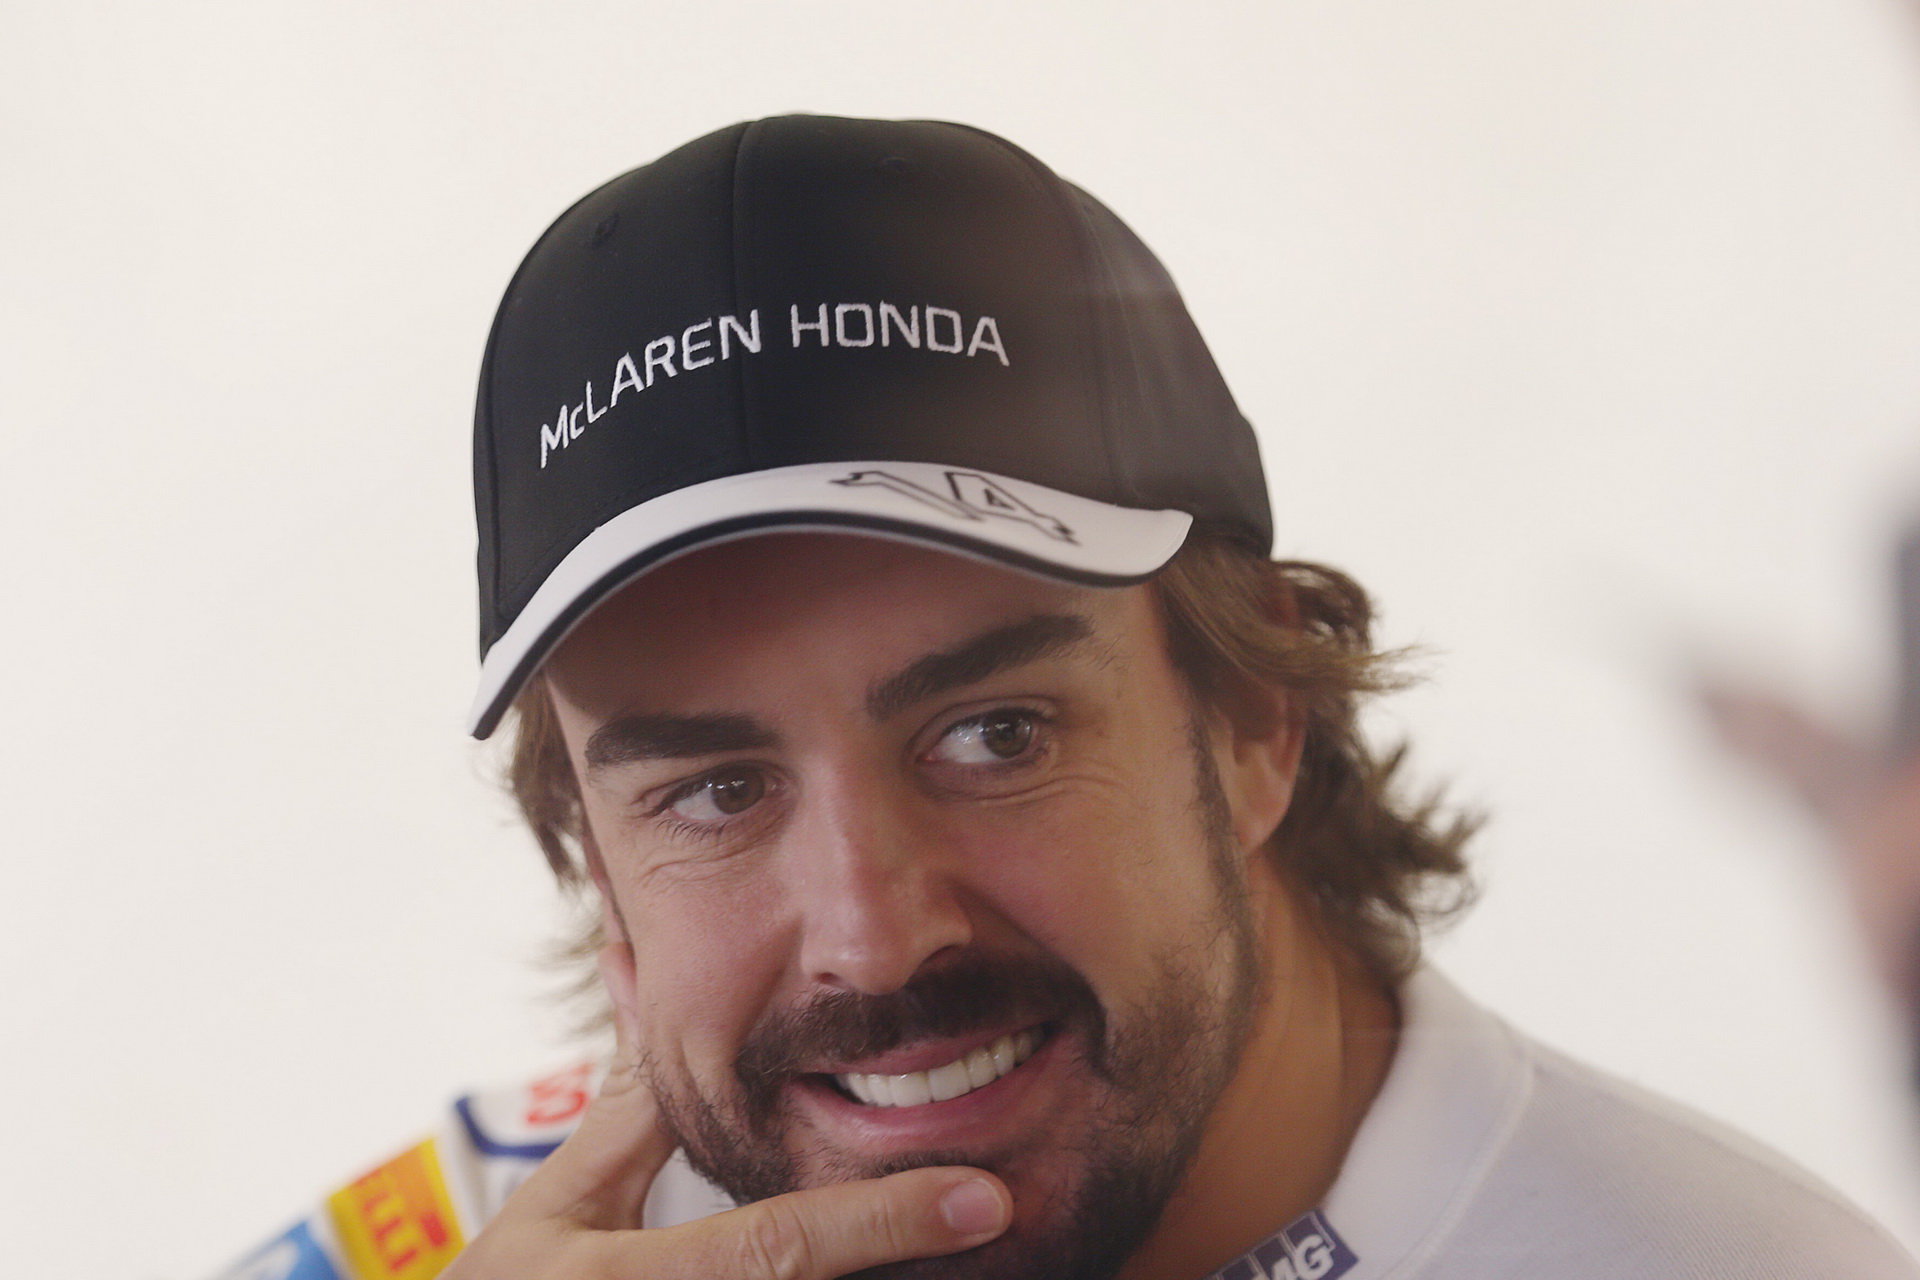 Fernando Alonso nejenže dojel závod, ale i získal bod